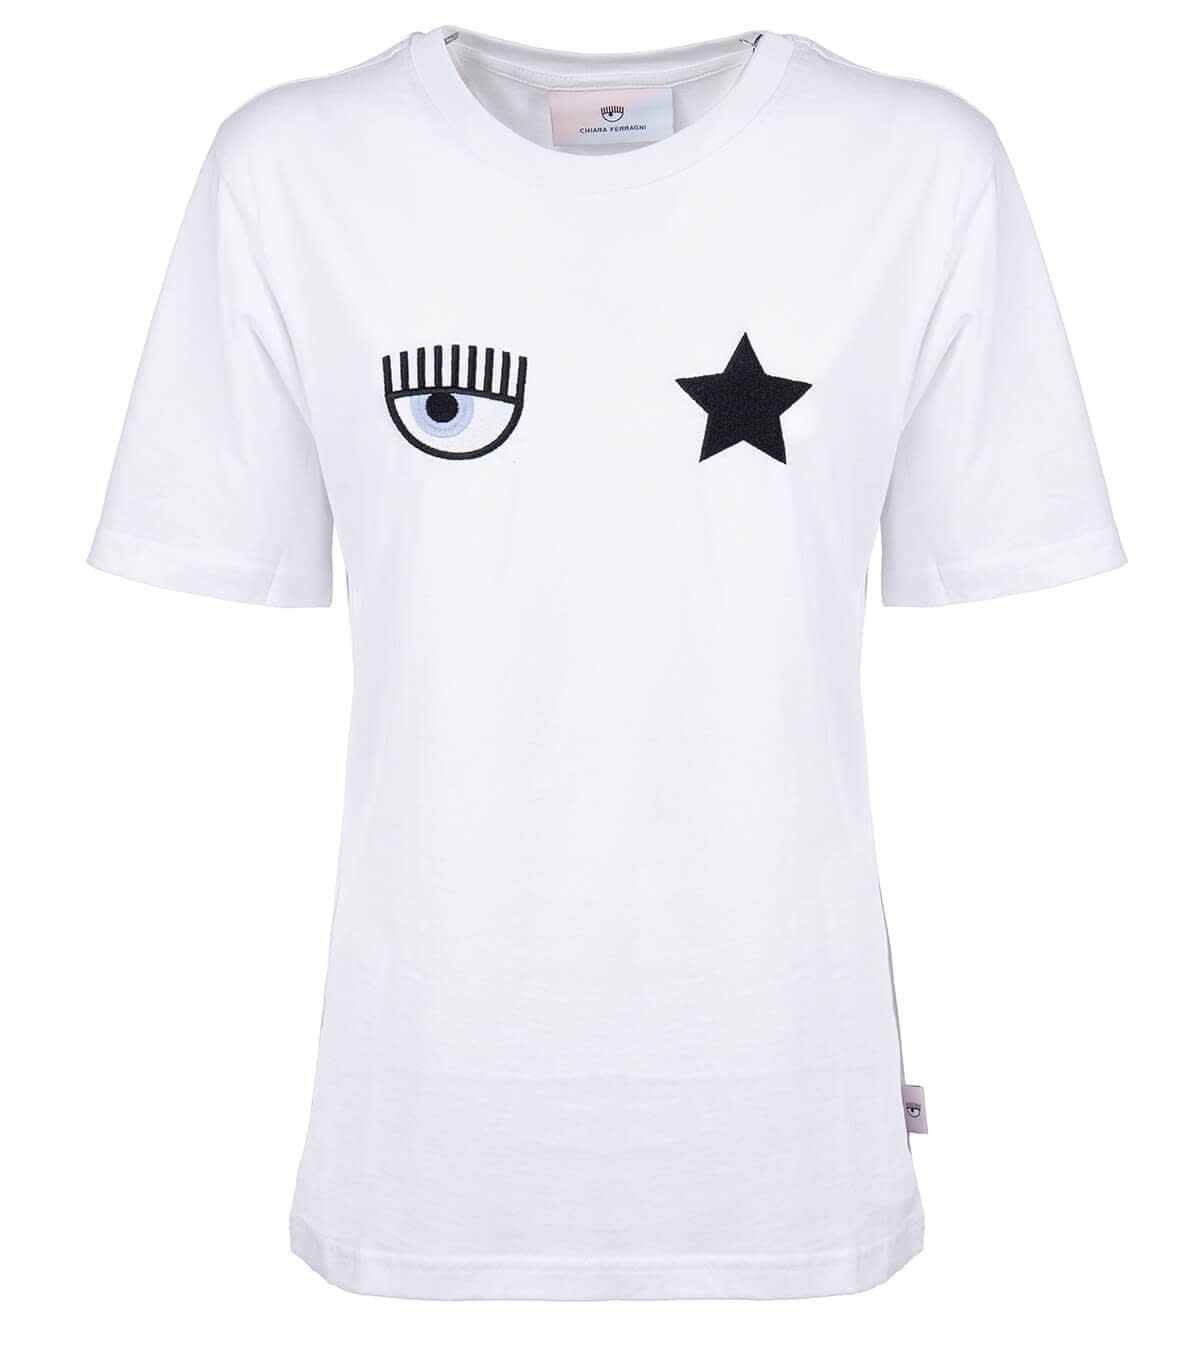 Chiara Ferragni Eyestar White T-shirt